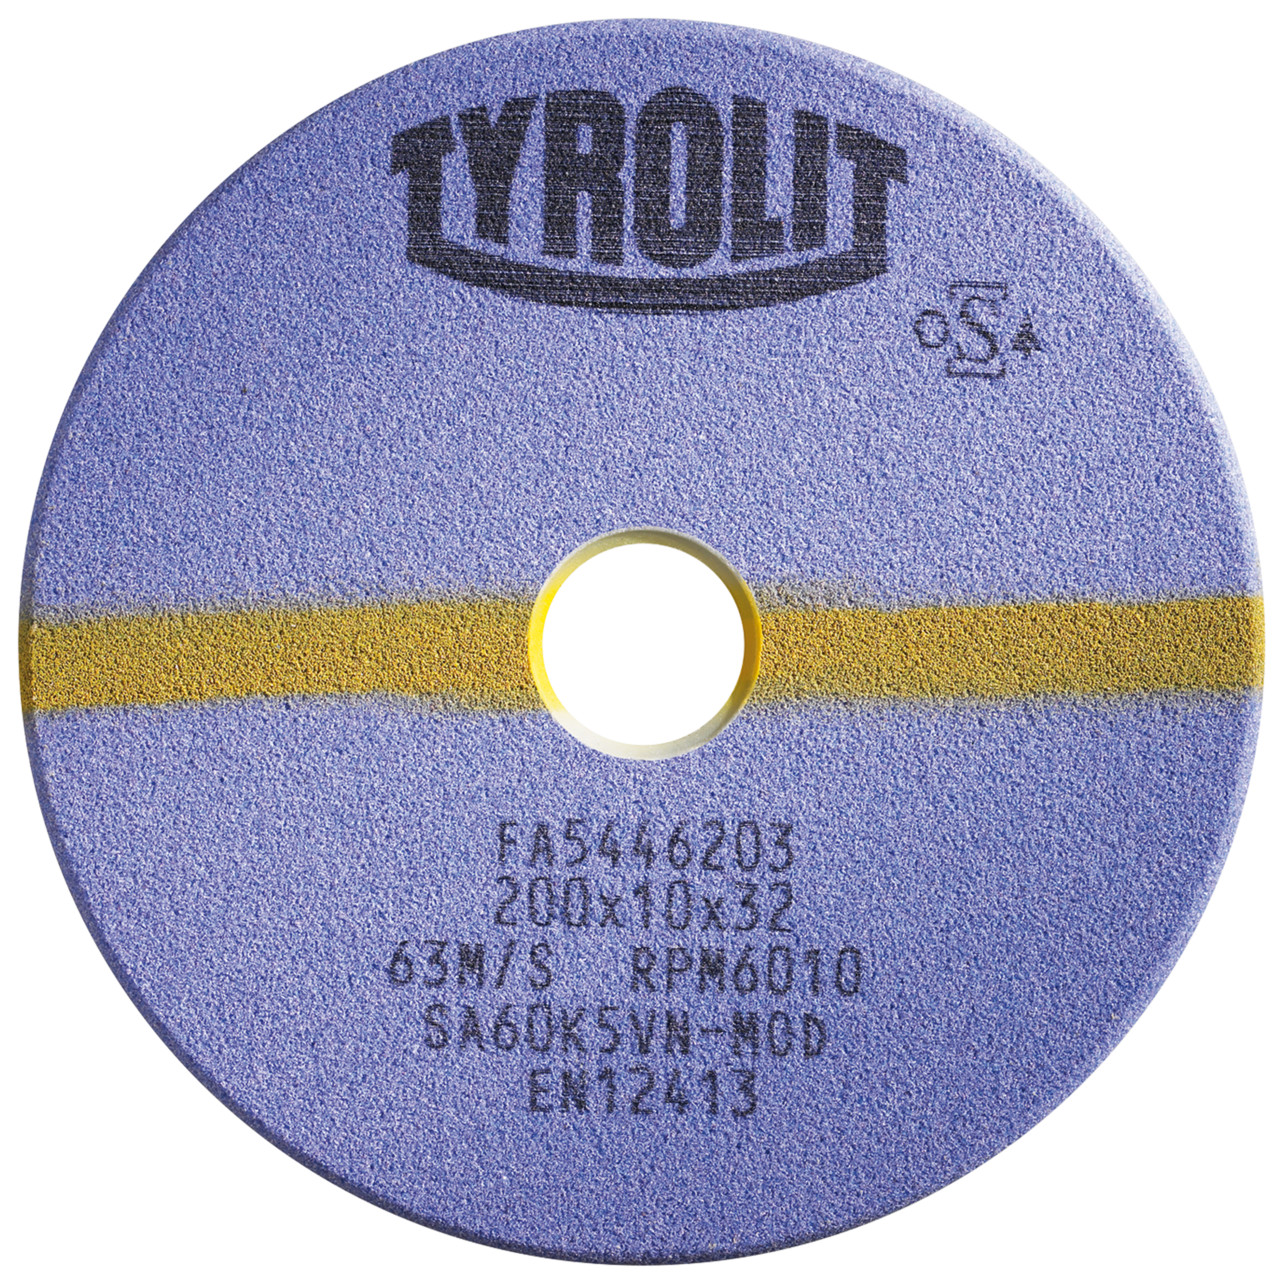 TYROLIT Schleifwerkzeuge für Sägeschärfautomaten DxTxH 200x2,5x32 Für Kreissägen und stellitierte Band- und Gattersägen, Form: 1C, Art. 867603